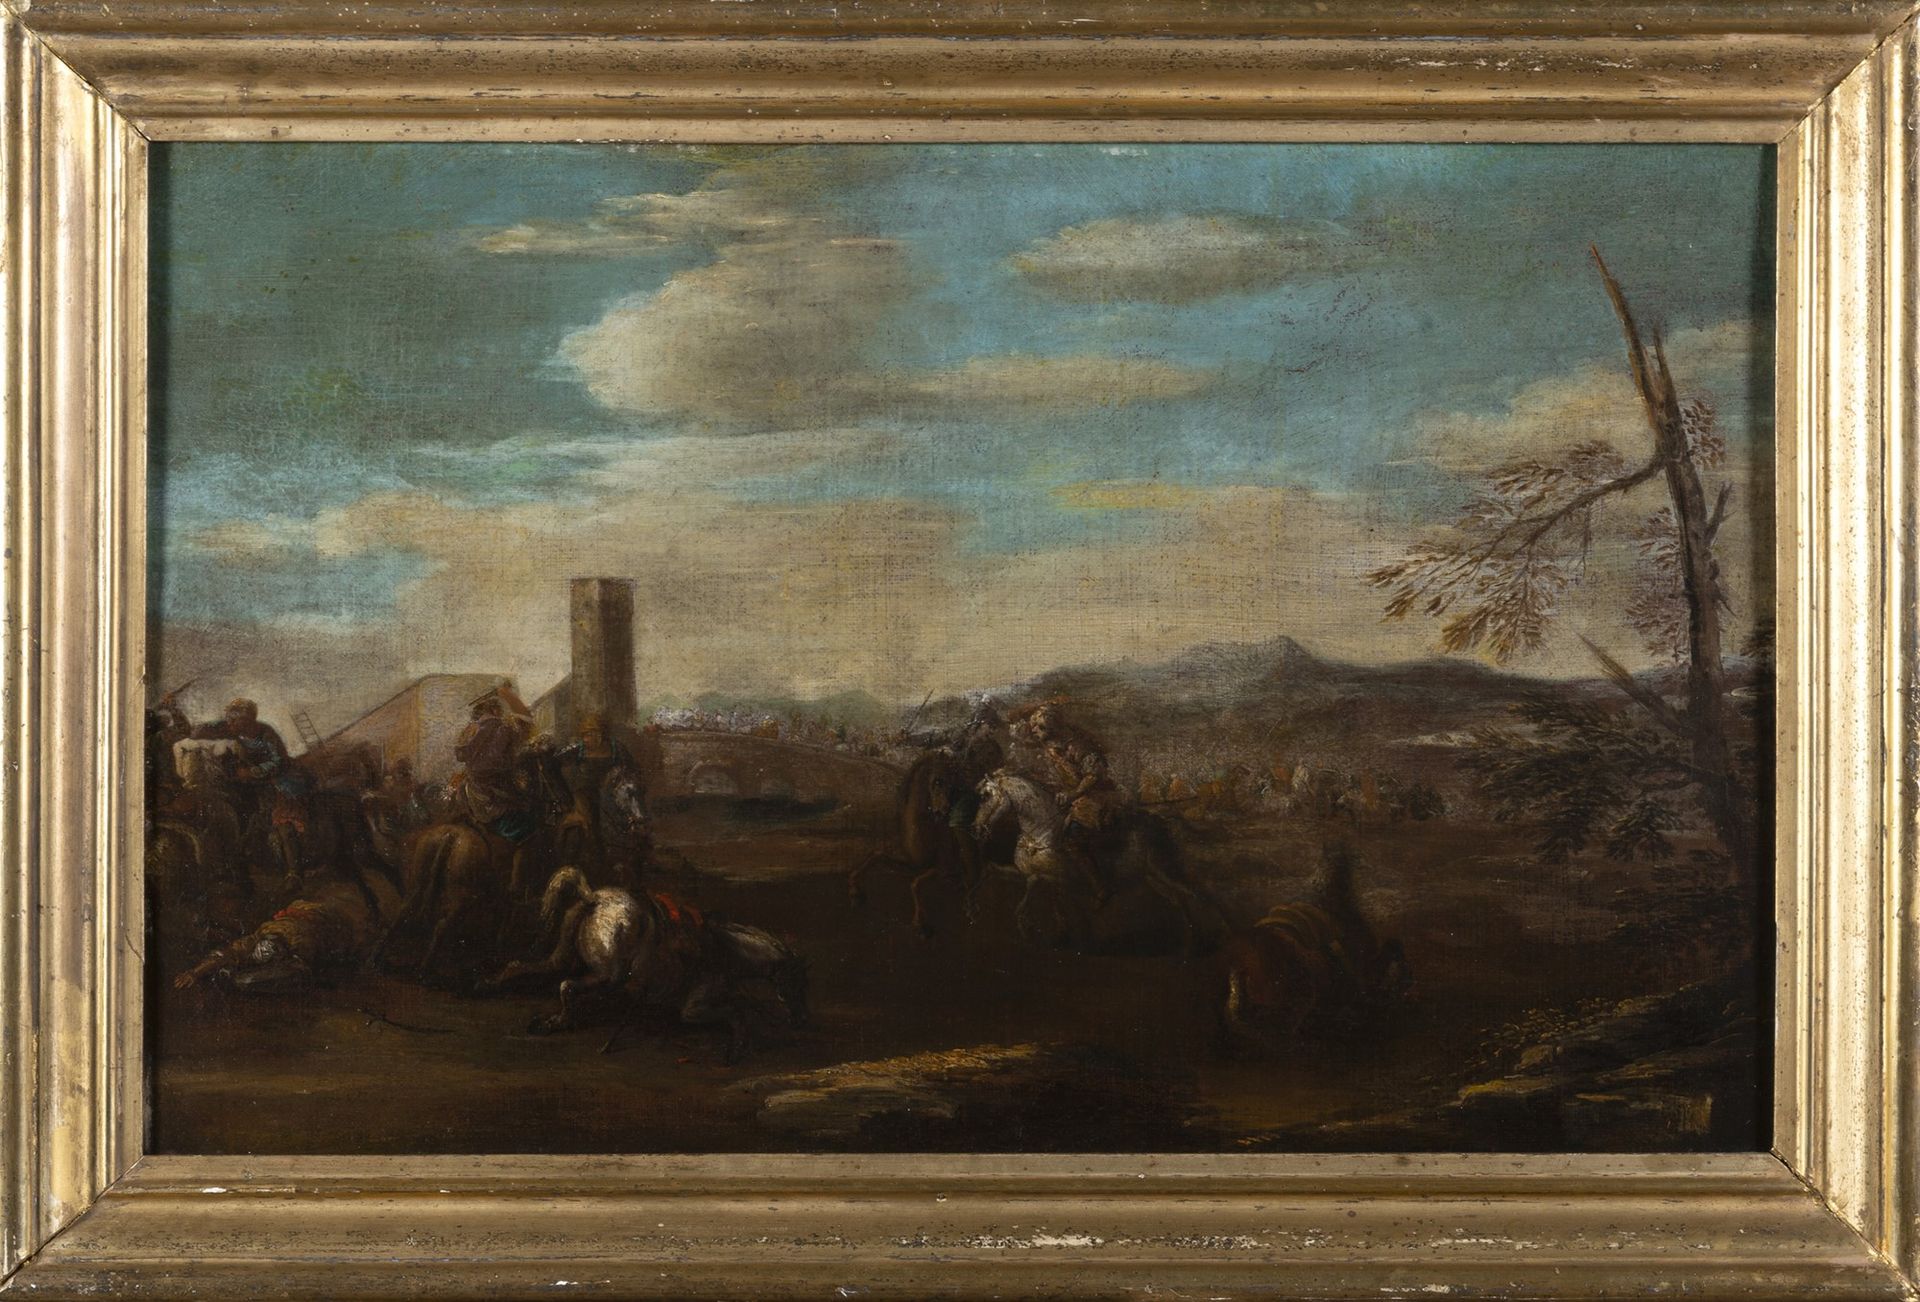 Scuola italiana, secolo XVII 有战斗场景的风景

布面油画
39.4 x 63 cm